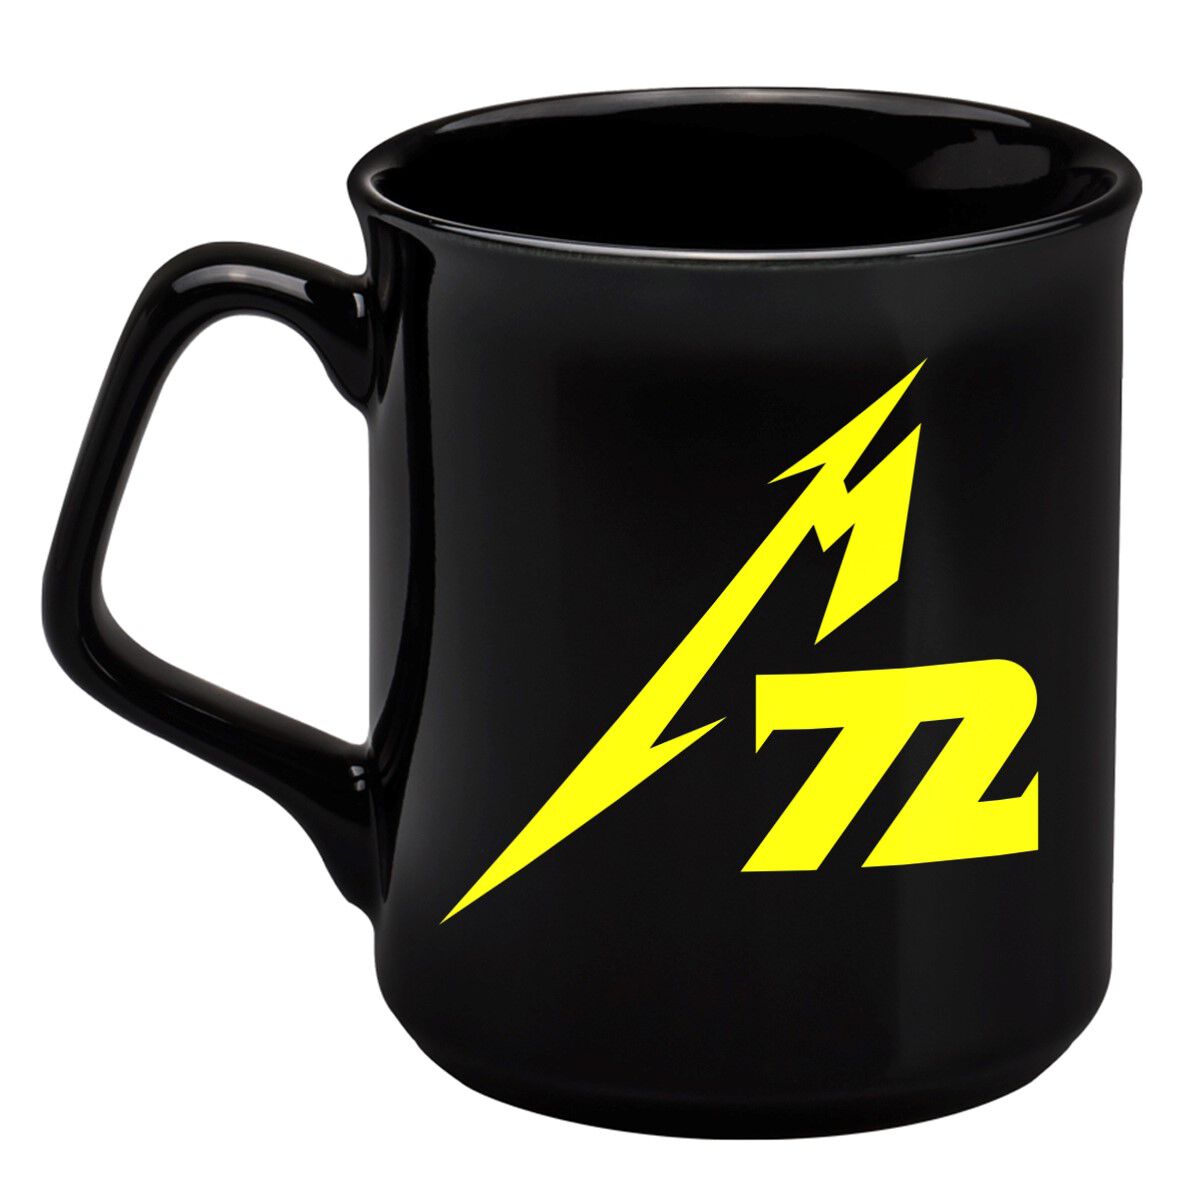 Metallica Tasse - M72 - schwarz  - Lizenziertes Merchandise!